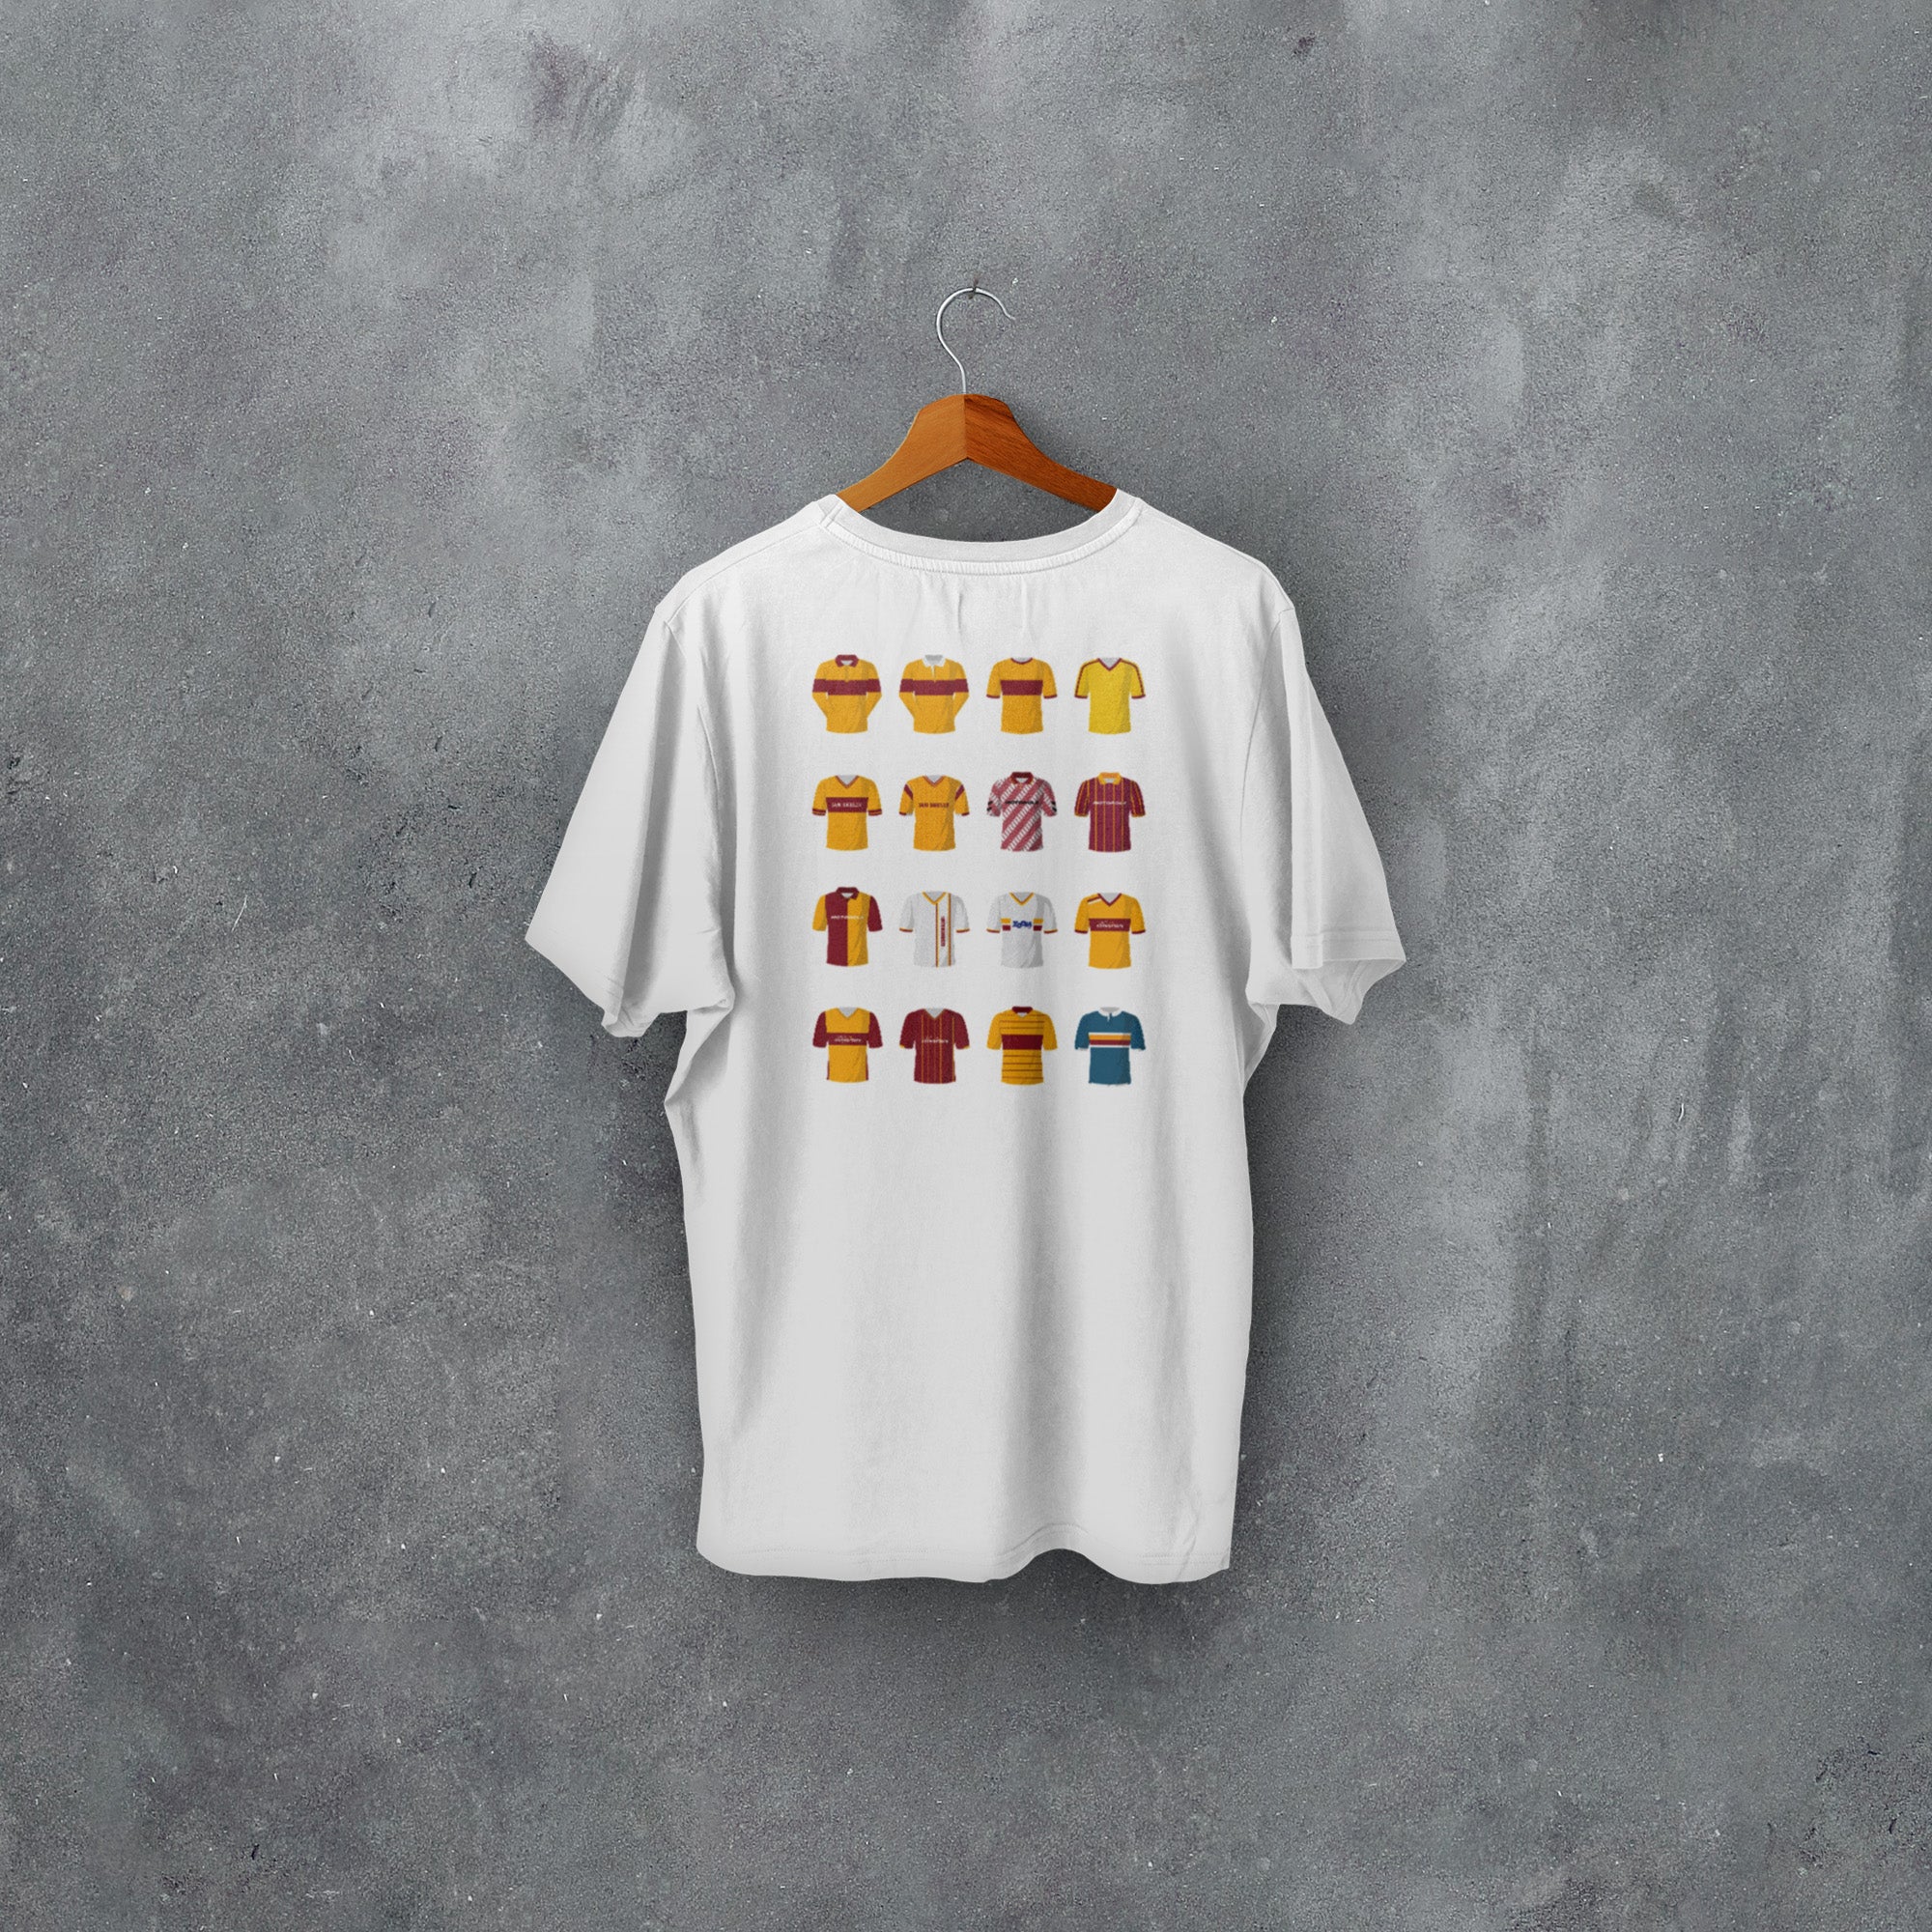 Motherwell Classic Kits Football T-Shirt